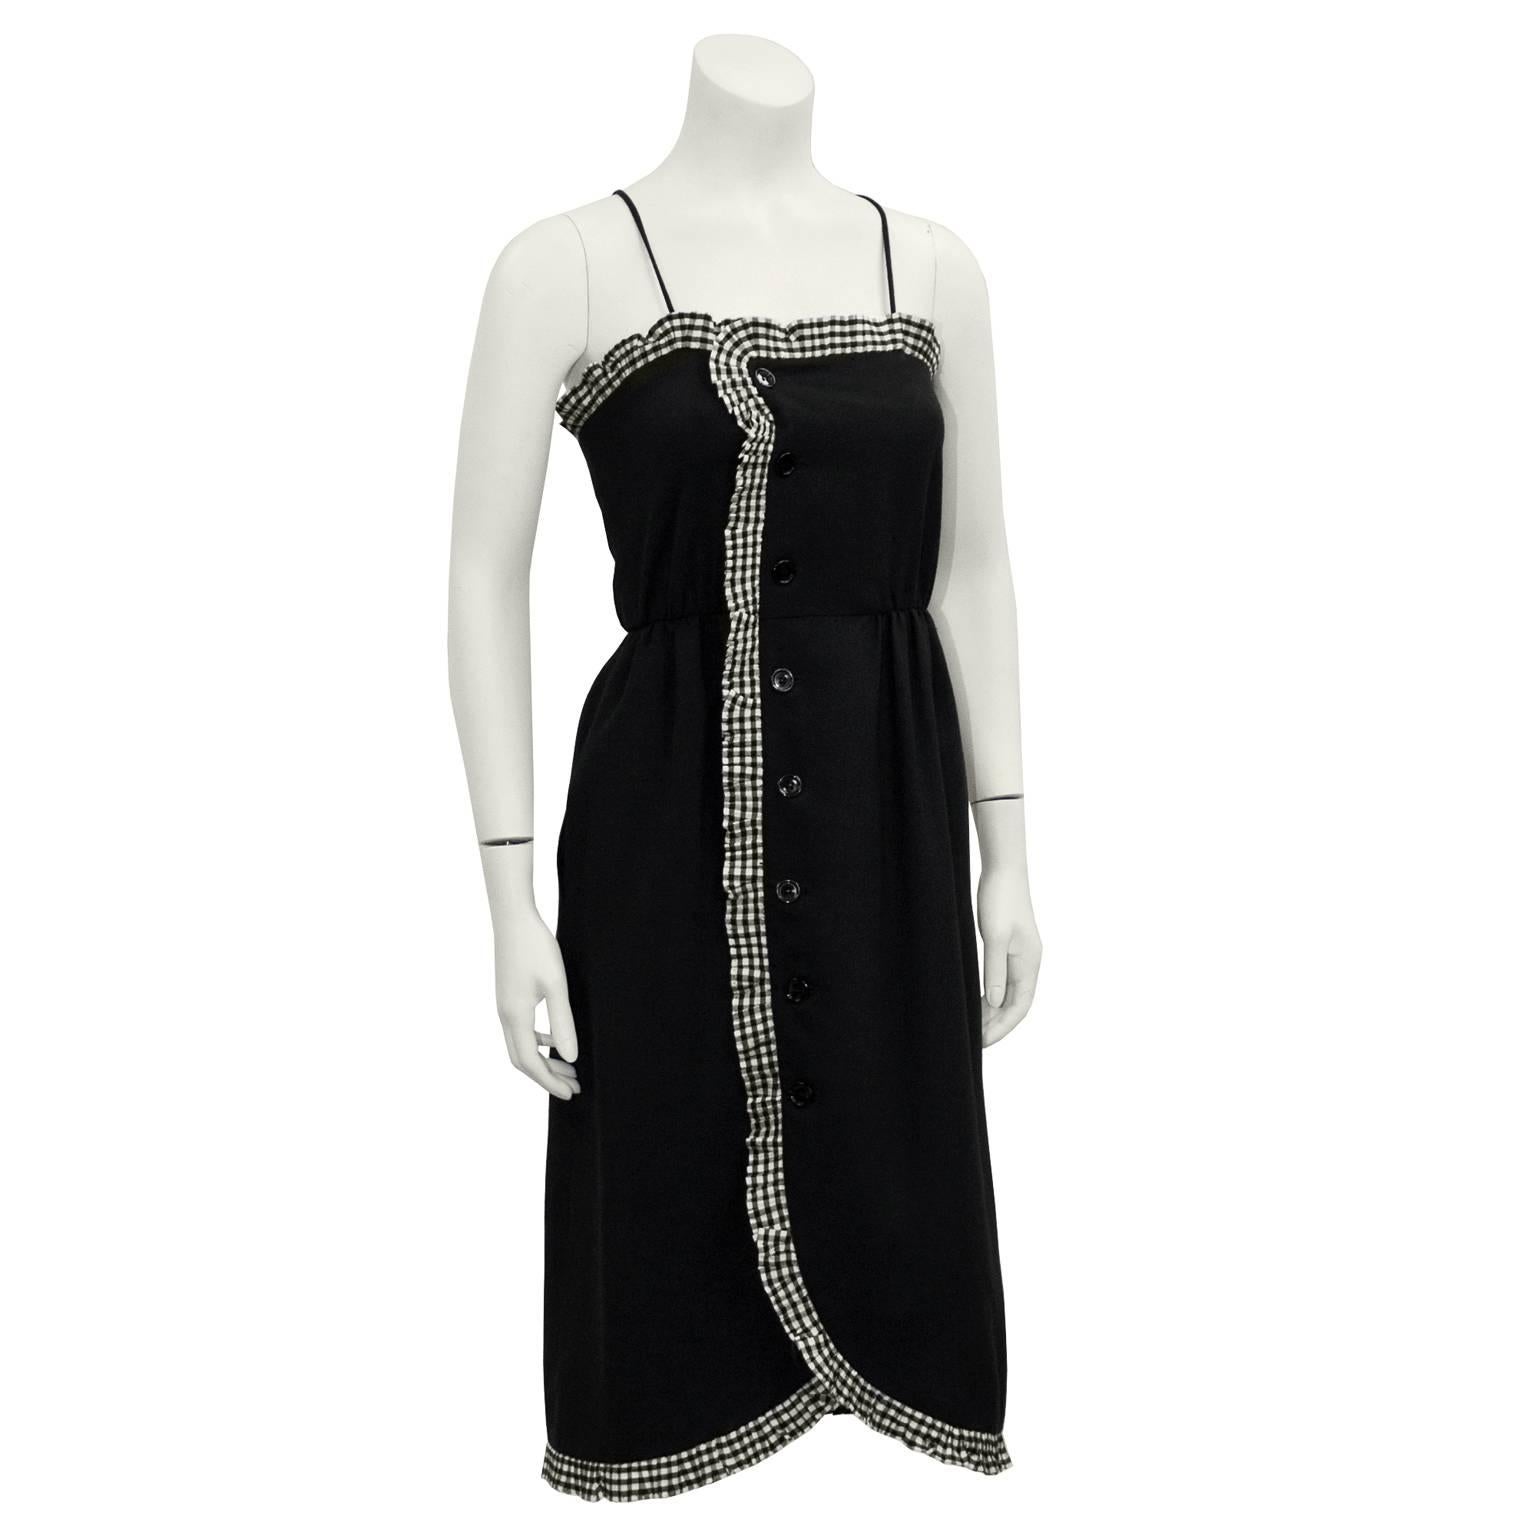 Bezauberndes schwarzes Wickelkleid aus Baumwolle von Victor Costa aus den frühen 1980er Jahren mit schwarz-weißem Gingham-Rüschenbesatz. Mit Camisole-Ausschnitt und Spaghetti-Trägern. In der Taille eingeklemmt. Knopfverschluss vorne links mit